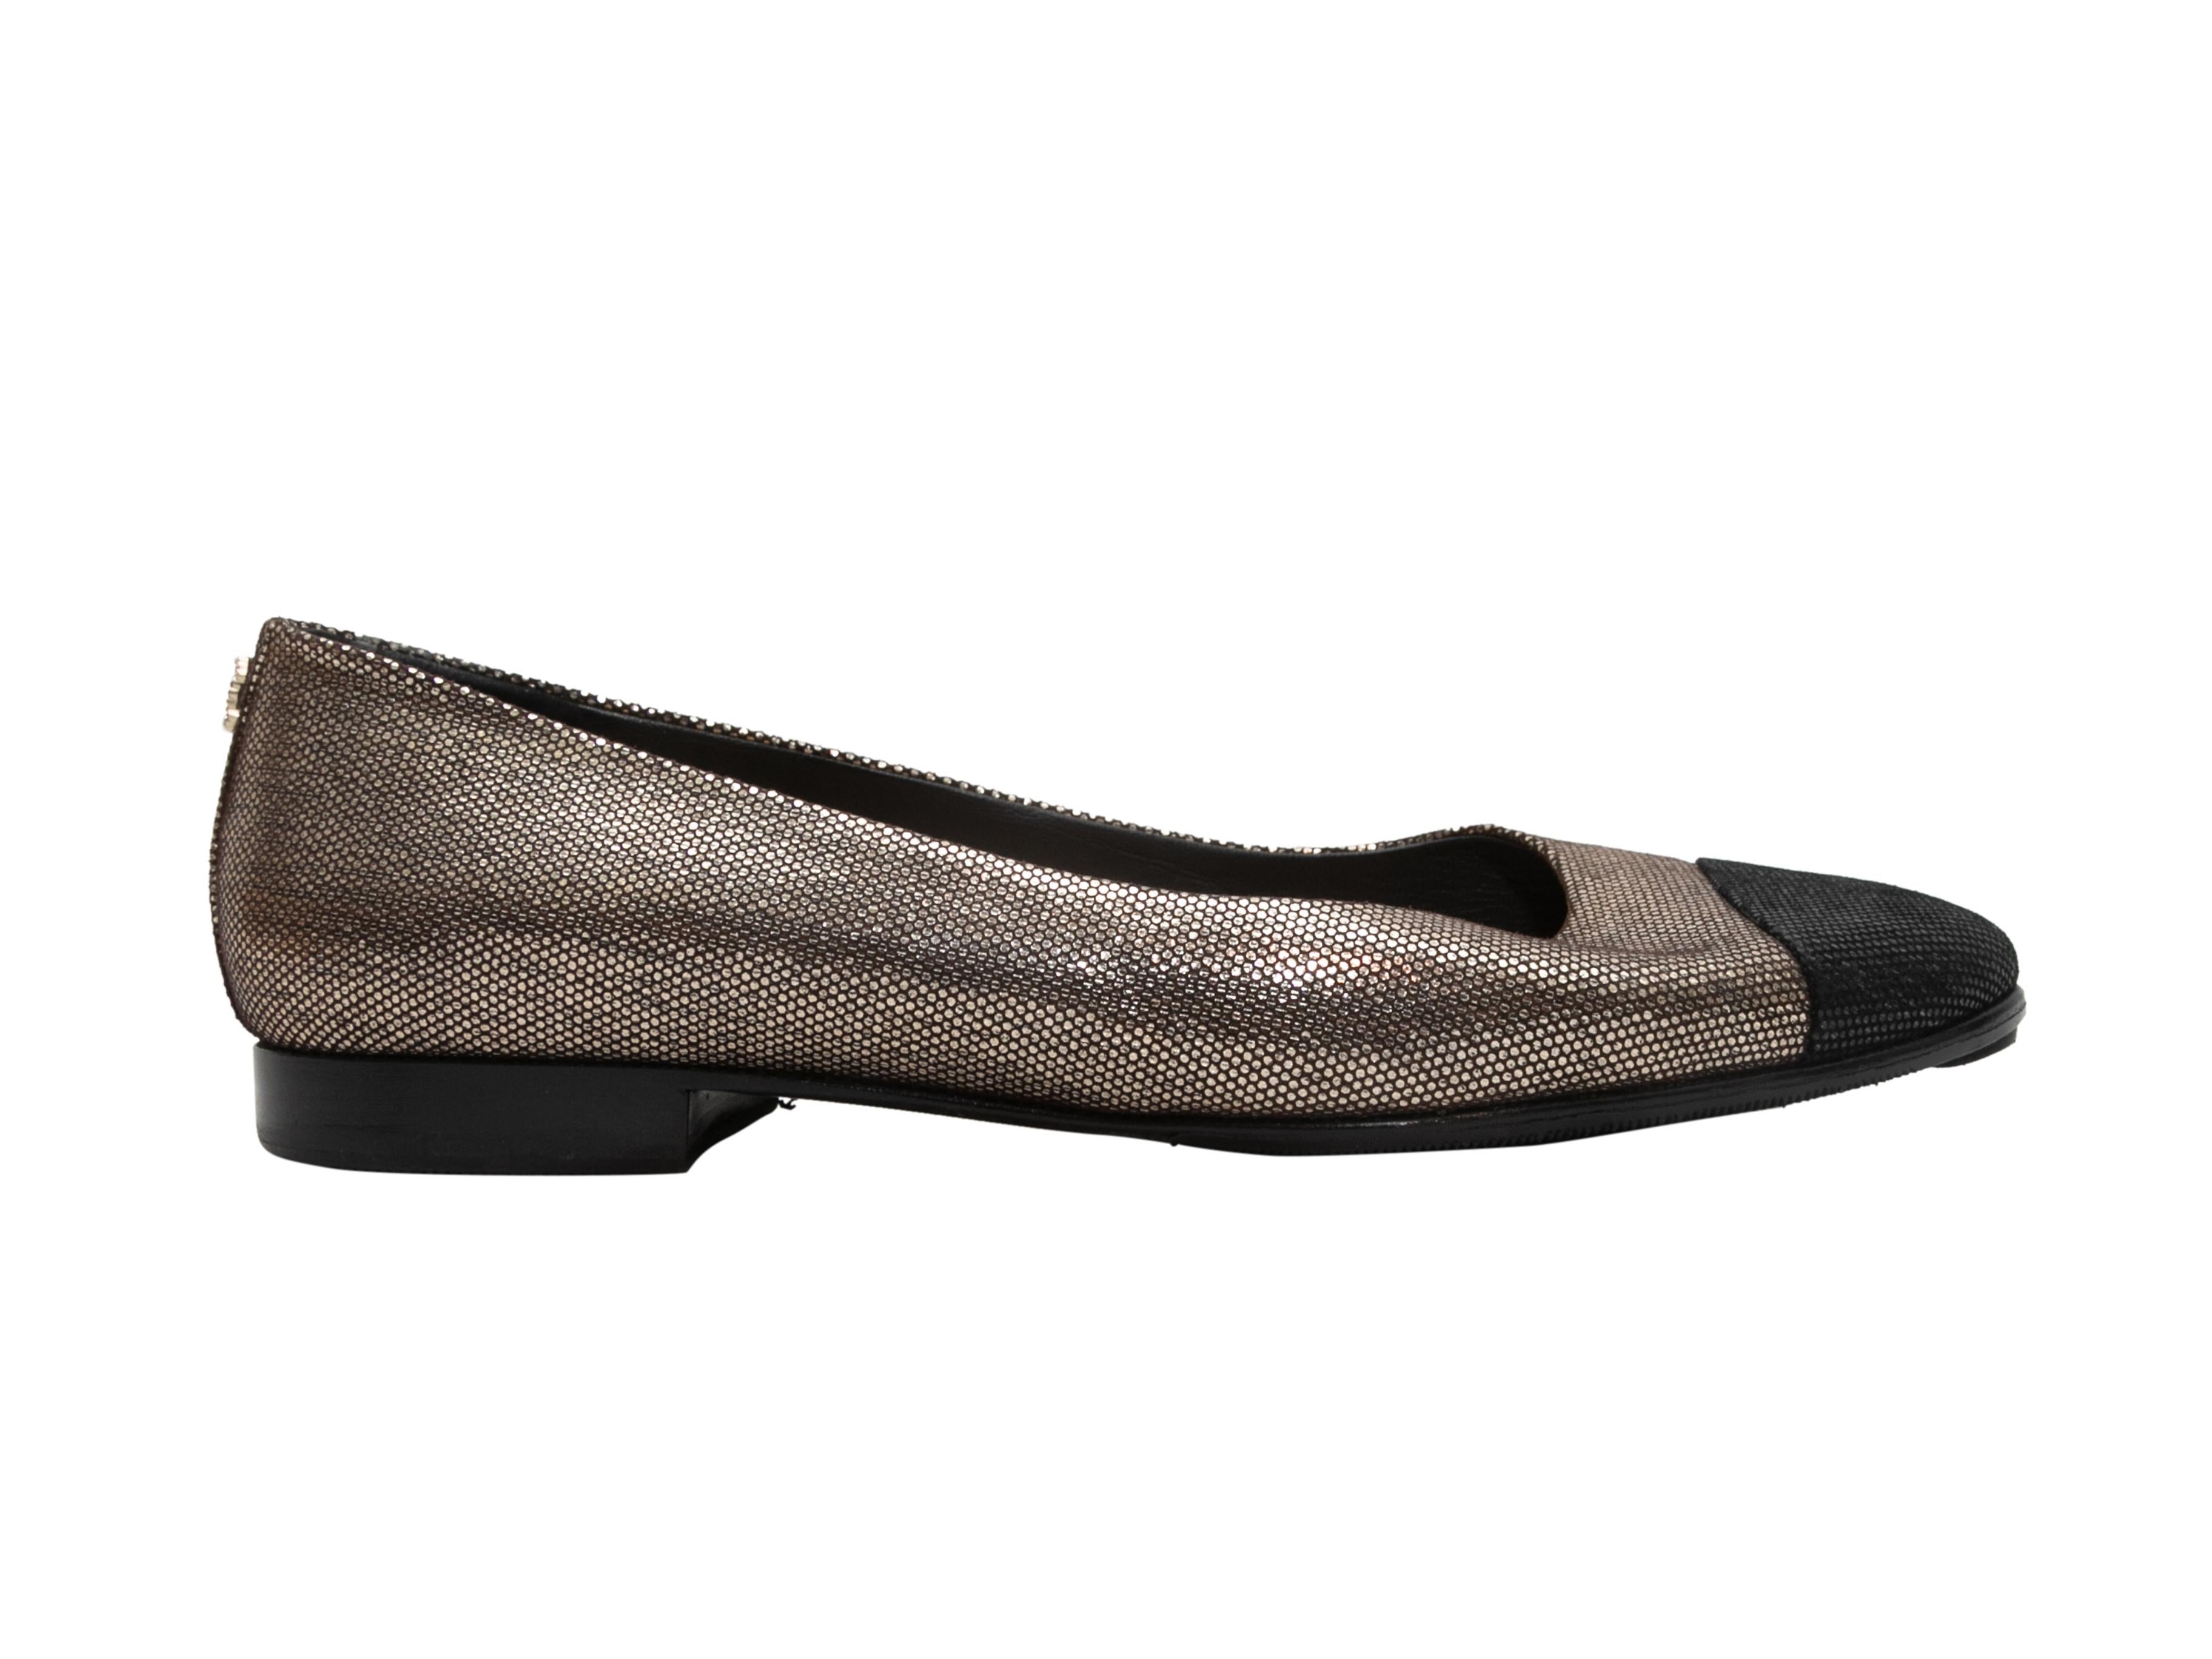 Women's or Men's Silver & Black Chanel Cap-Toe Flats Size 39.5